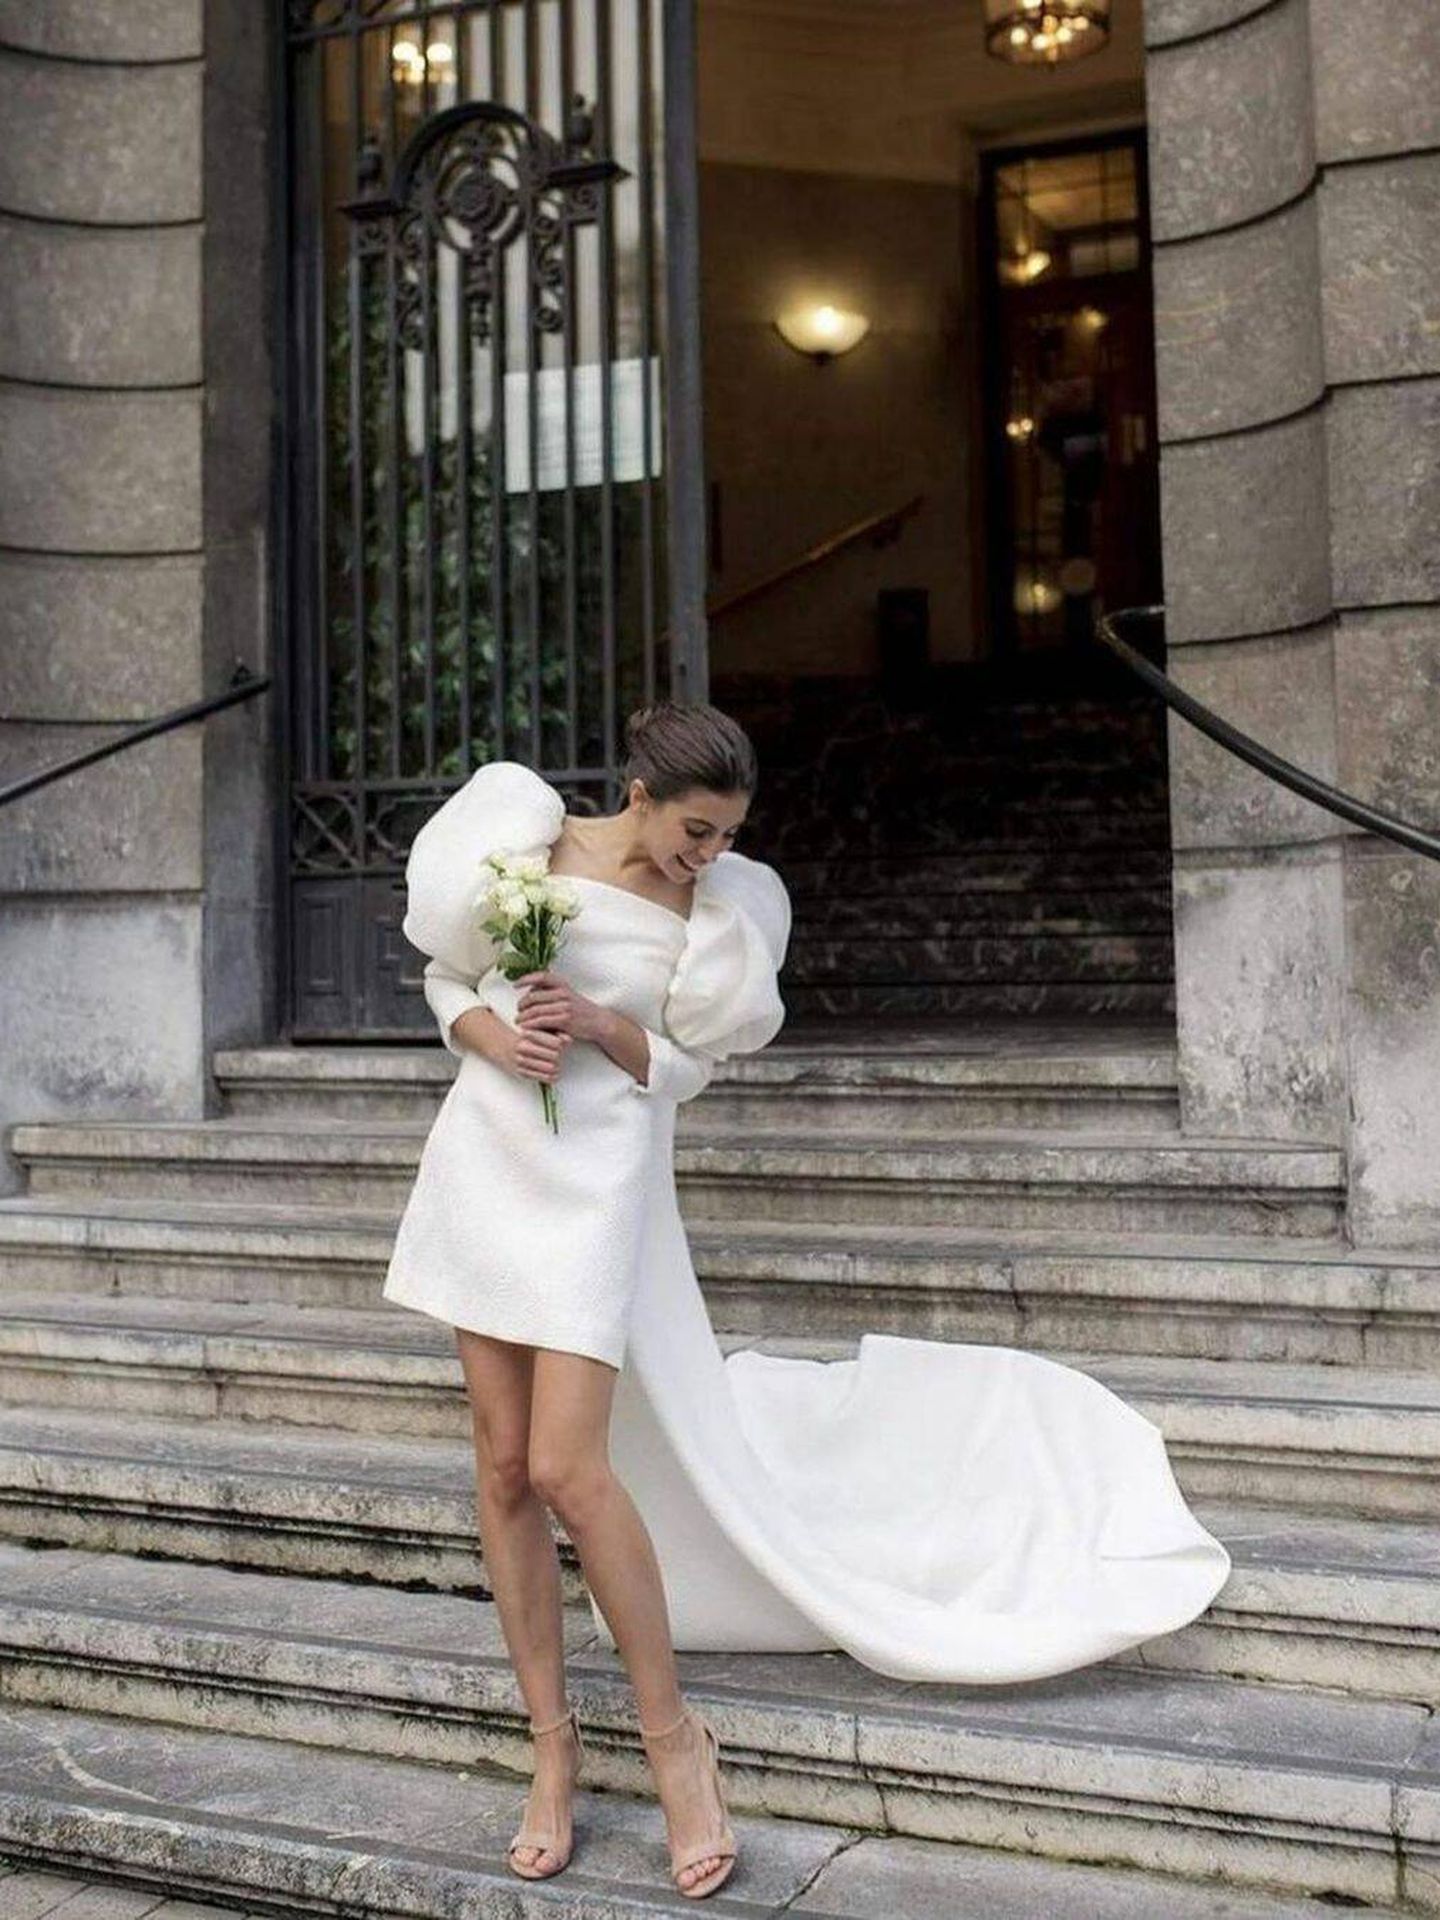 Vestidos de novia cortos: cuáles son tendencia y en qué bodas